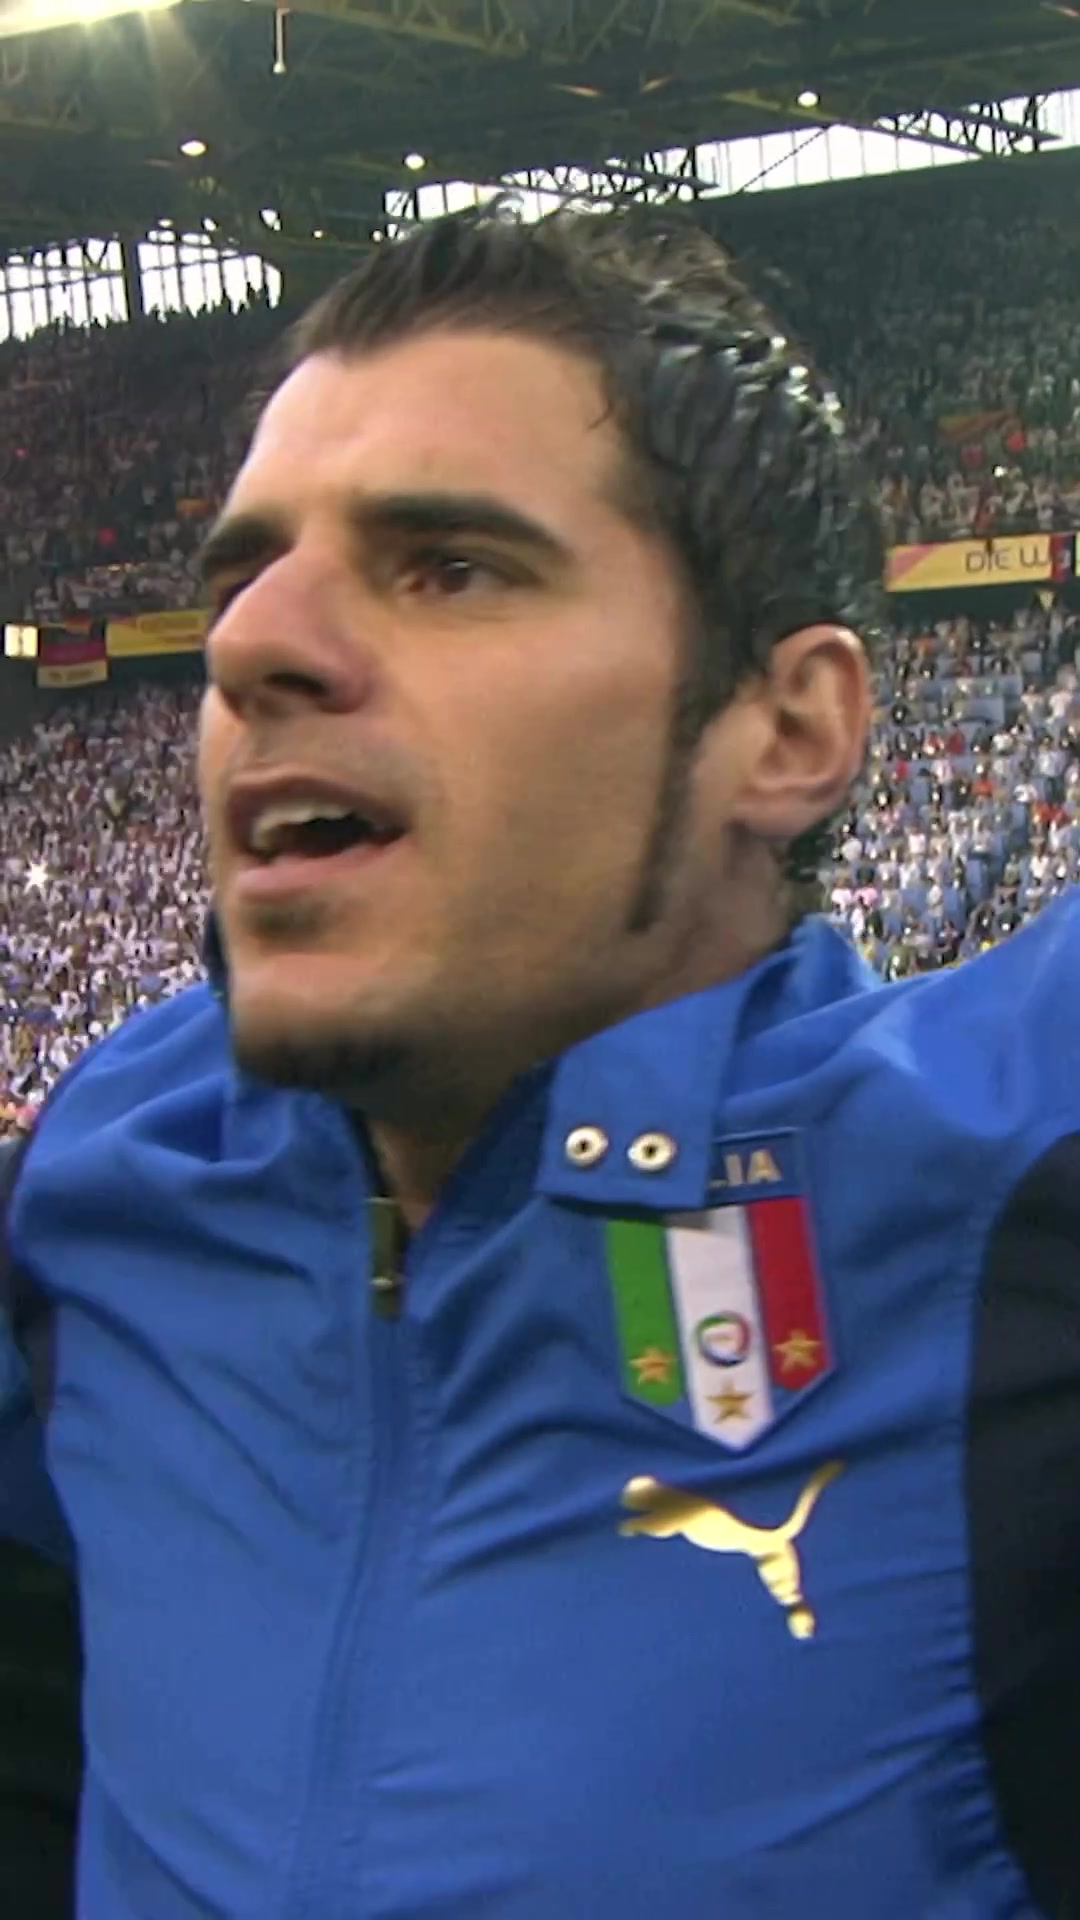  星光熠熠2006世界杯上意大利队的首发阵容